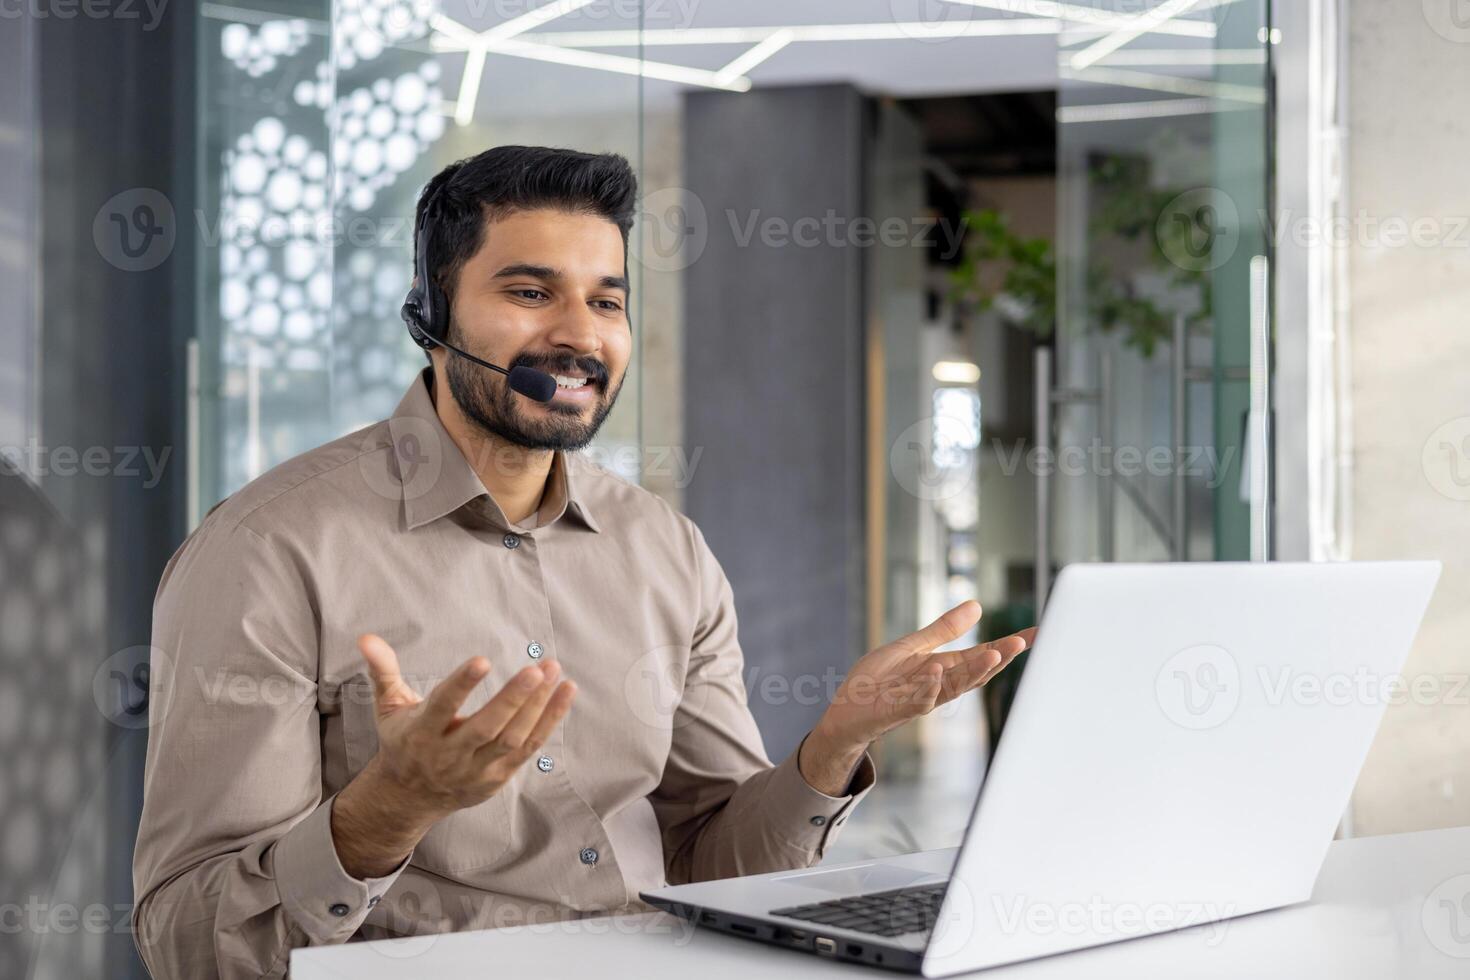 een vrolijk klant onderhoud vertegenwoordiger praat gebruik makend van koptelefoon in een modern kantoor instelling, assisteren klanten met expertise en een glimlach foto